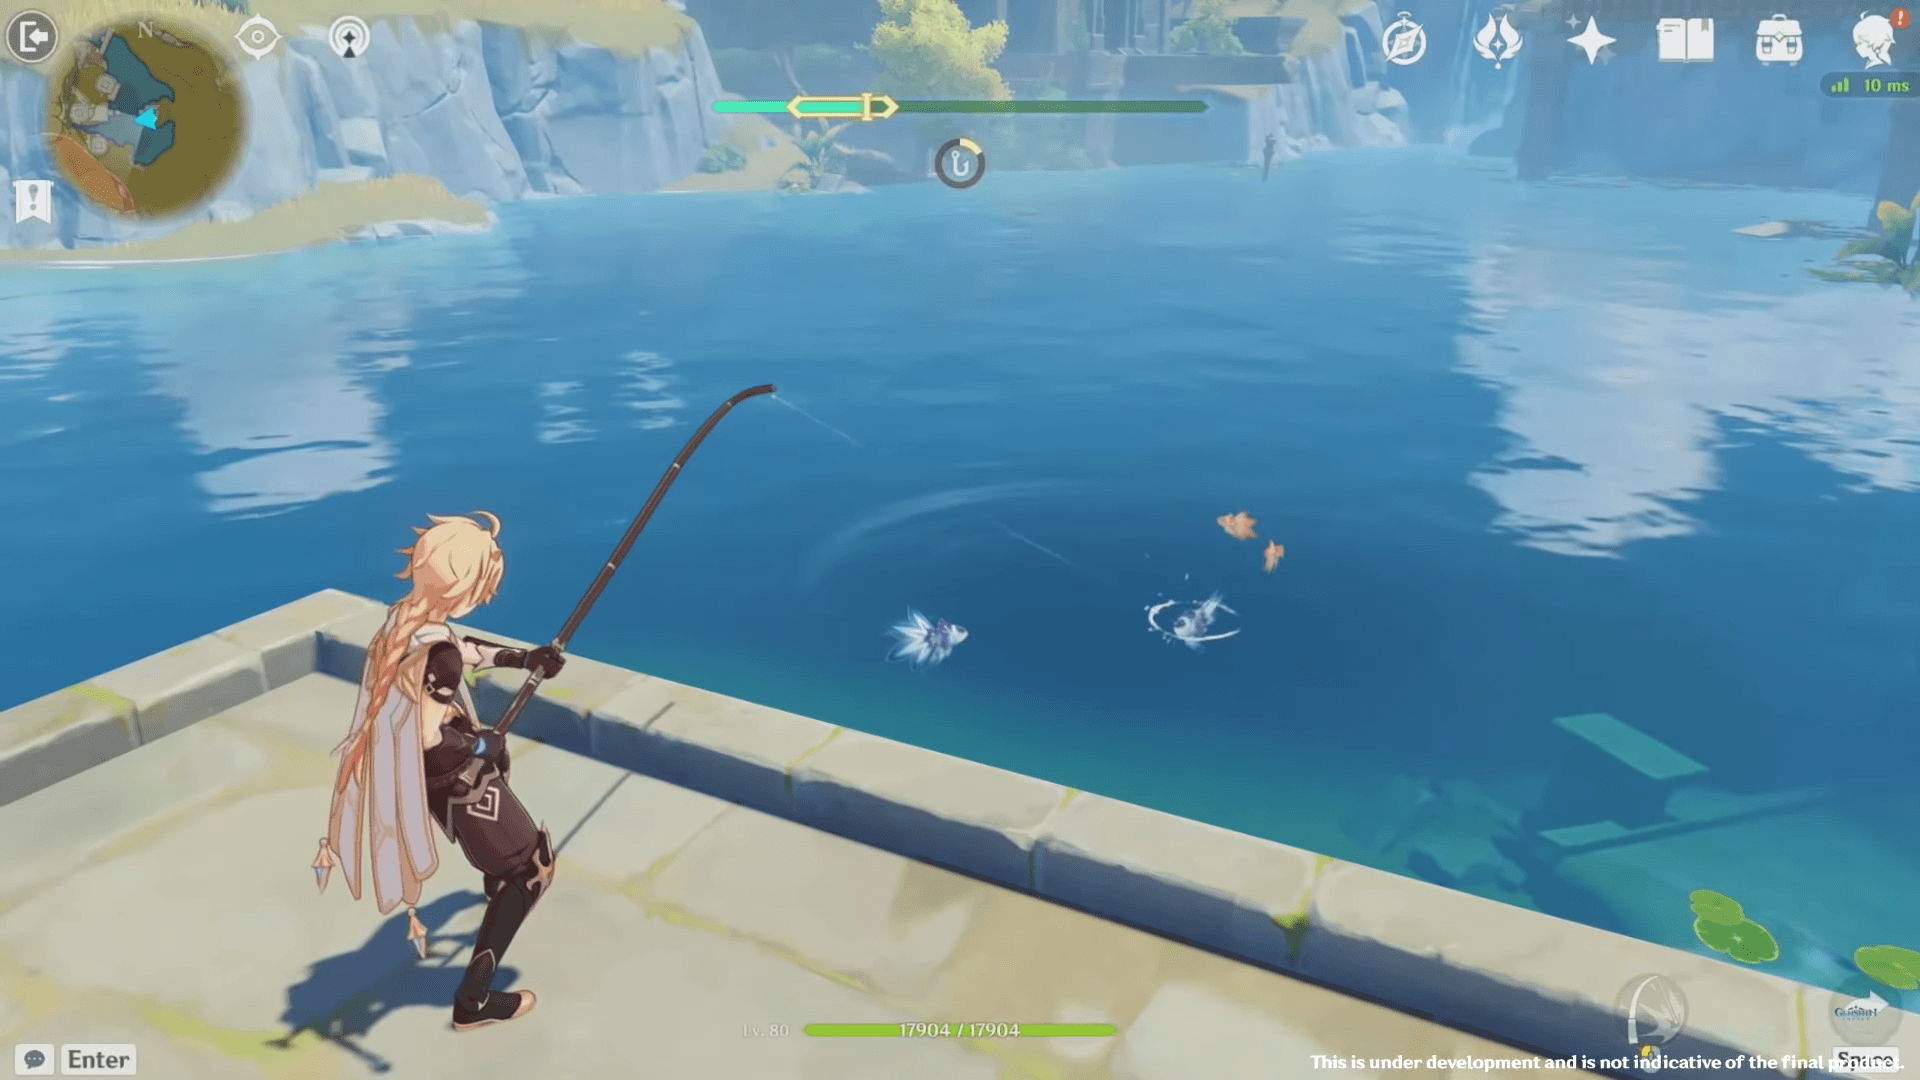 Atualização 2.1 de Genshin Impact implementa sistema de pesca, novos personagens, armas e bosses